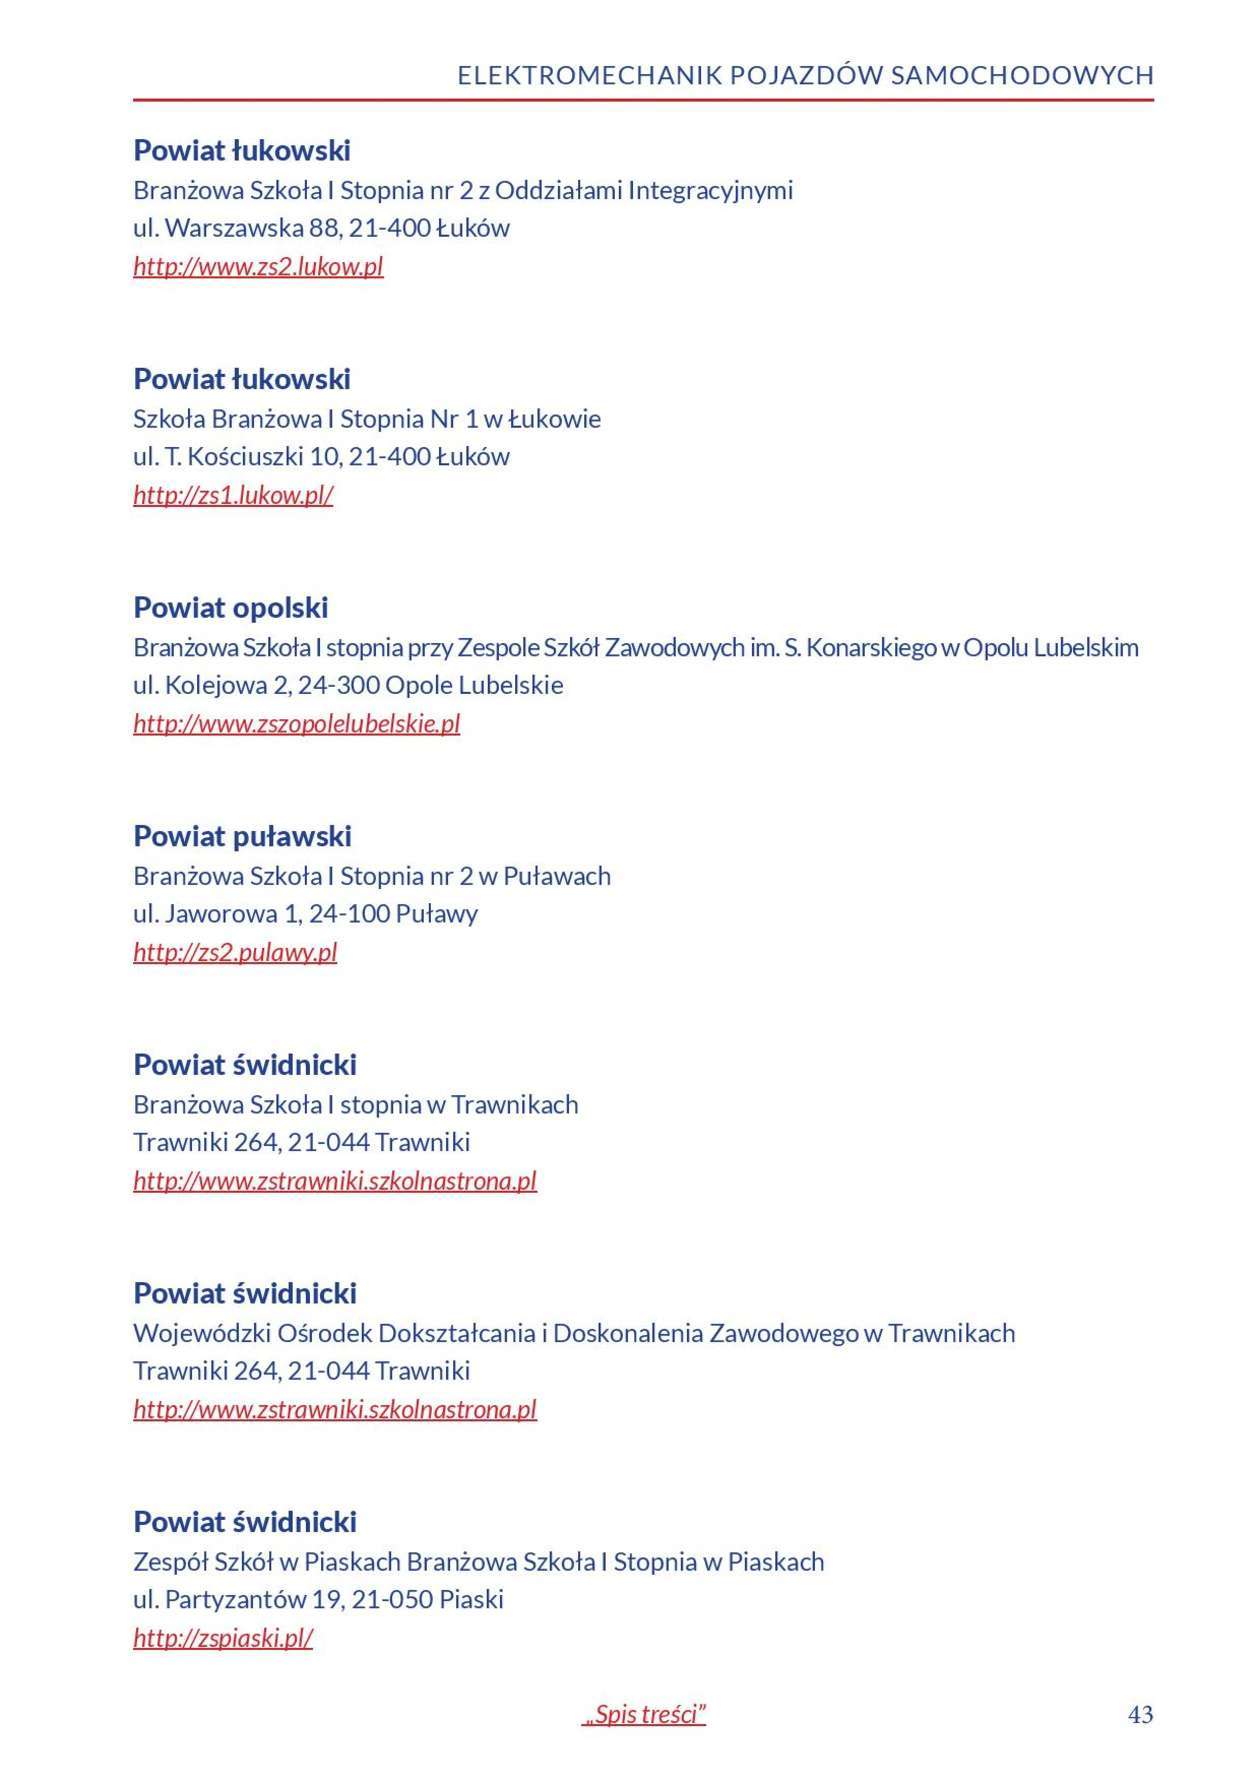  Informator o zawodach 2018/2019 w woj. lubelskim. Część 1 (zdjęcie 41) - Autor: Kuratorium Oświaty w Lublinie